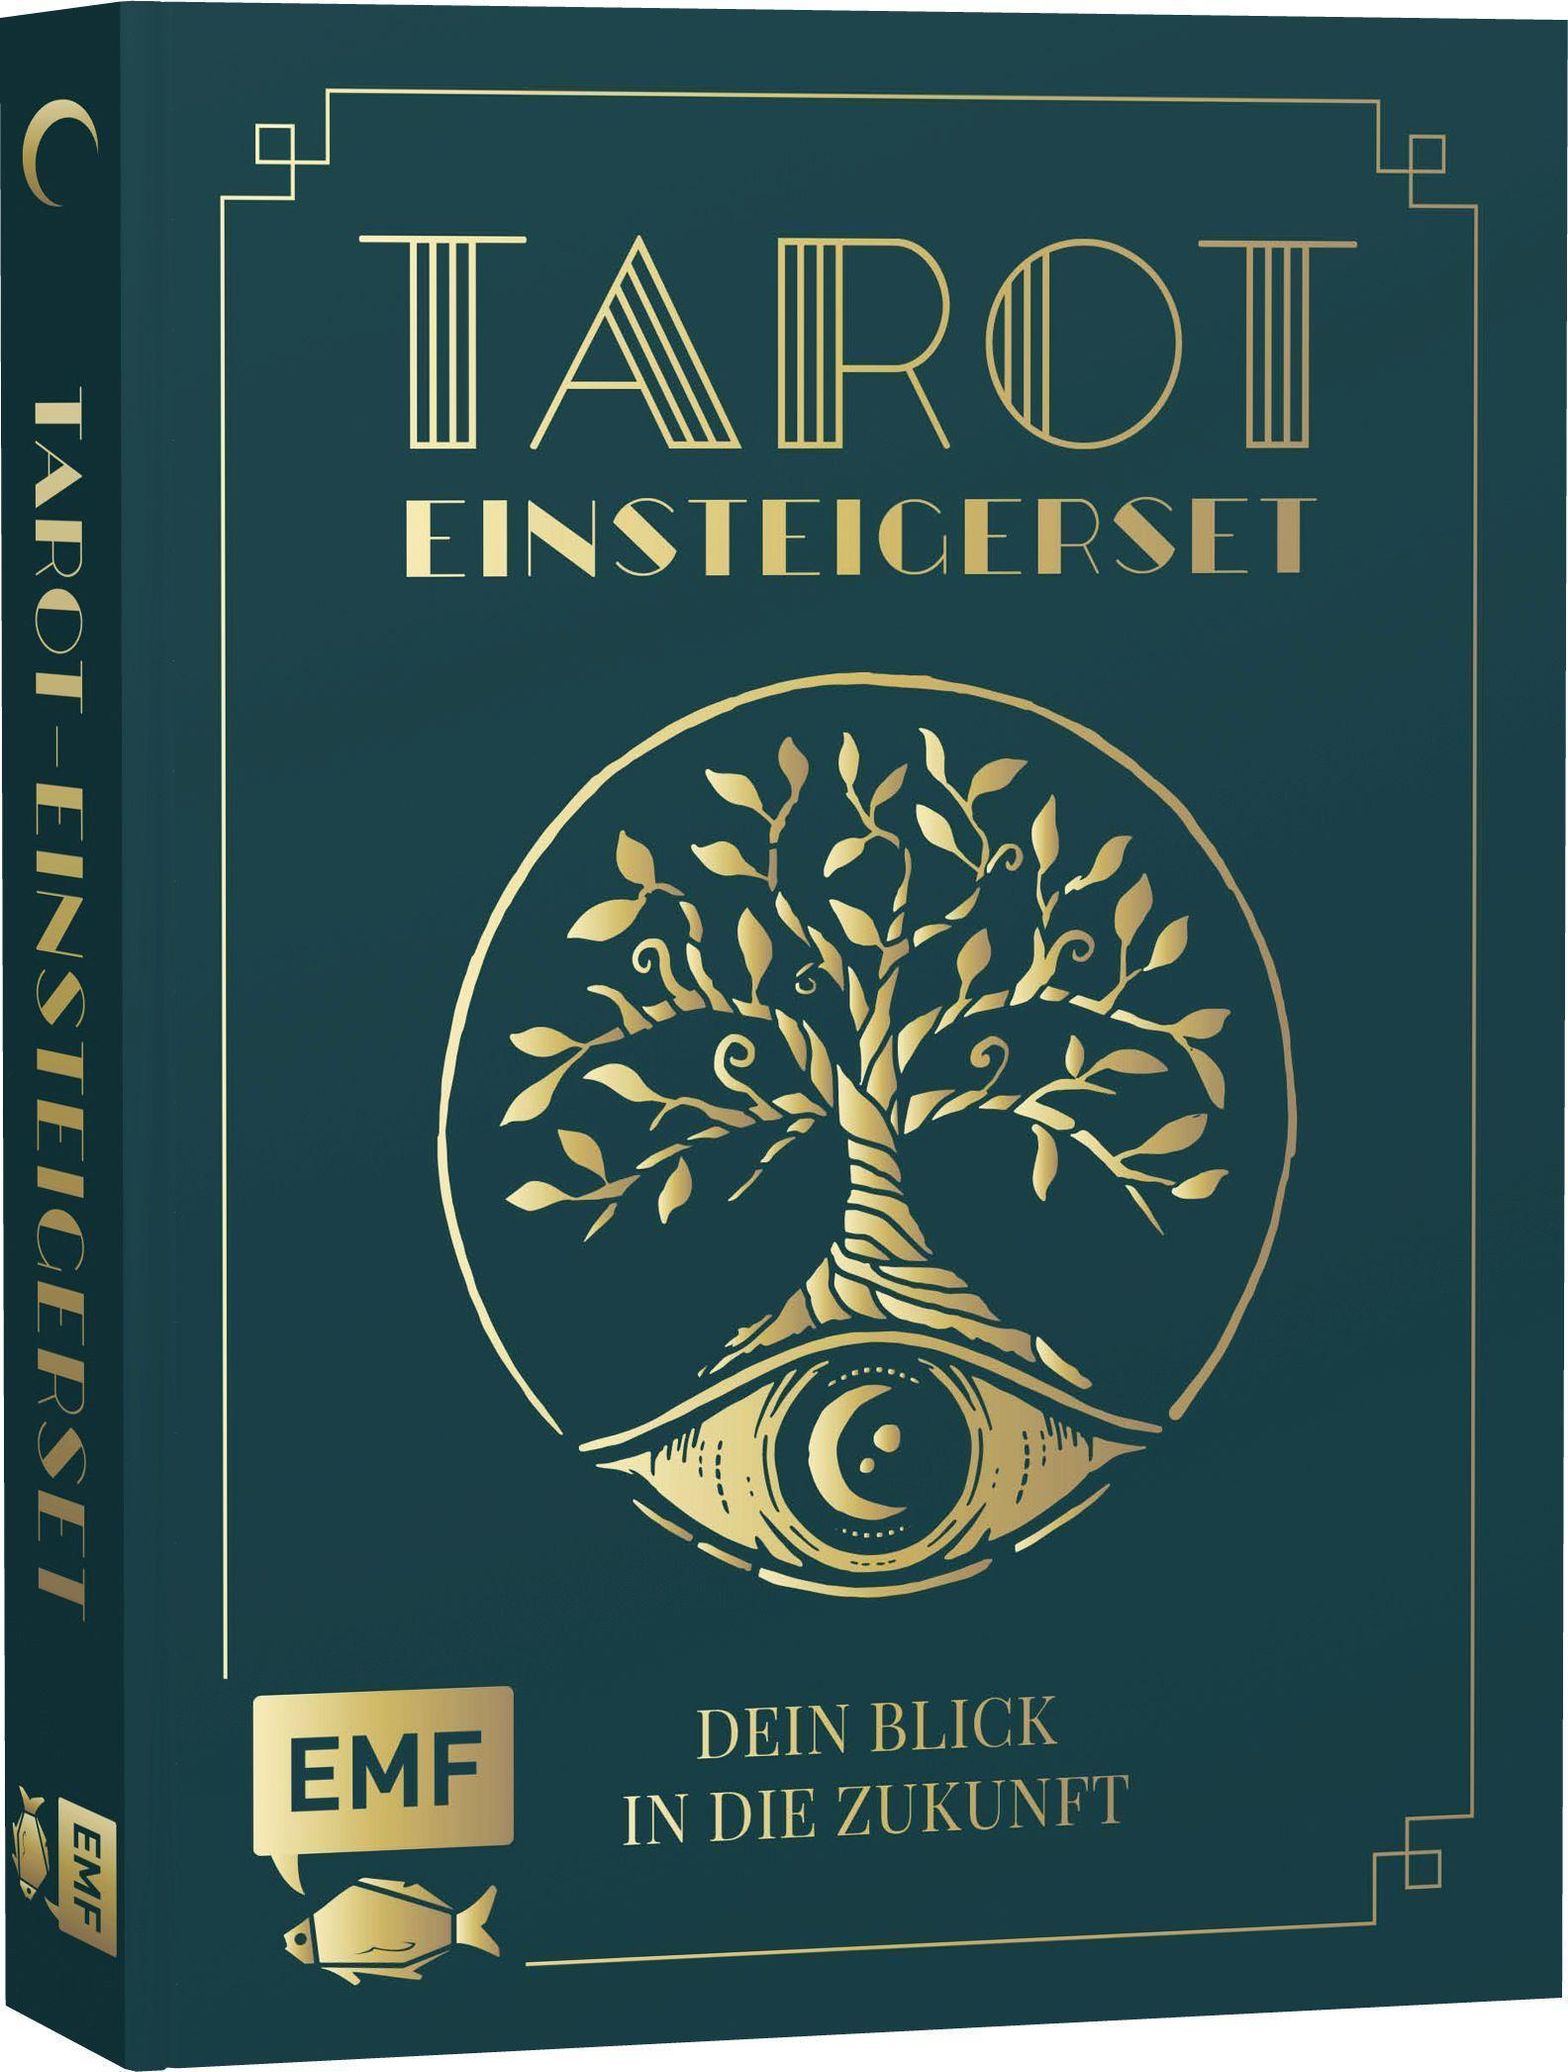 Dein Blick in die Zukunft - Tarot-Einsteigerset Buch versandkostenfrei bei  Weltbild.at bestellen